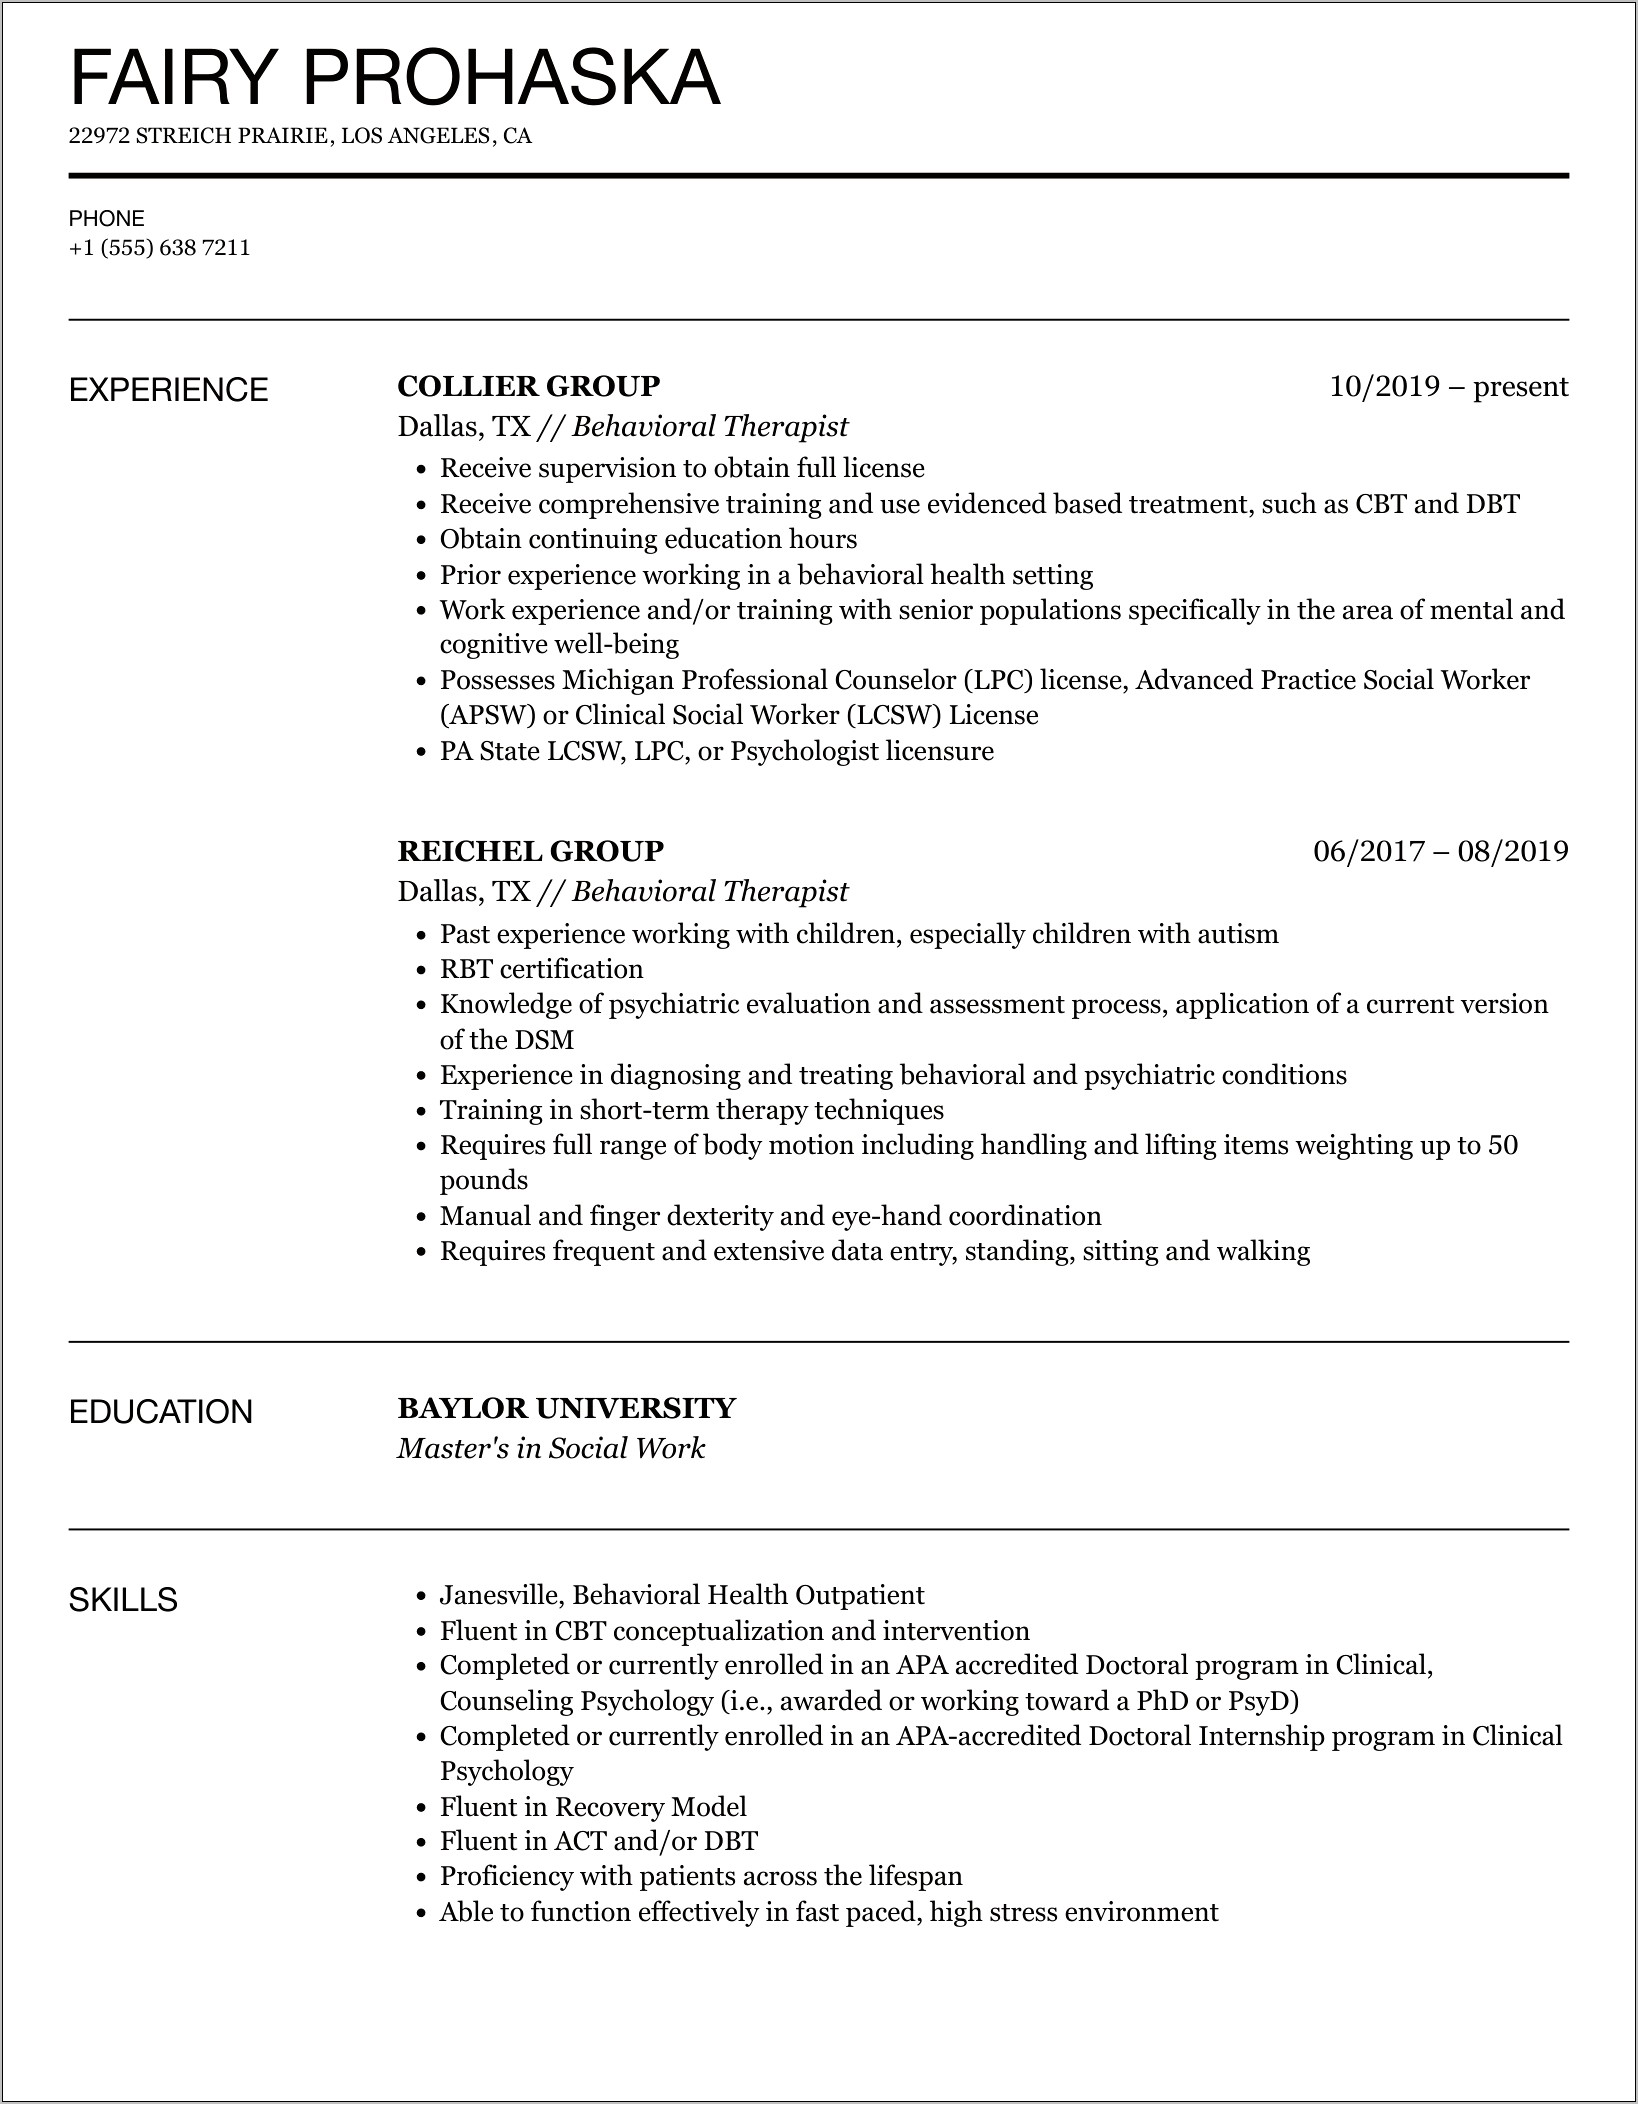 Sample Resume Of Behavior Therapist